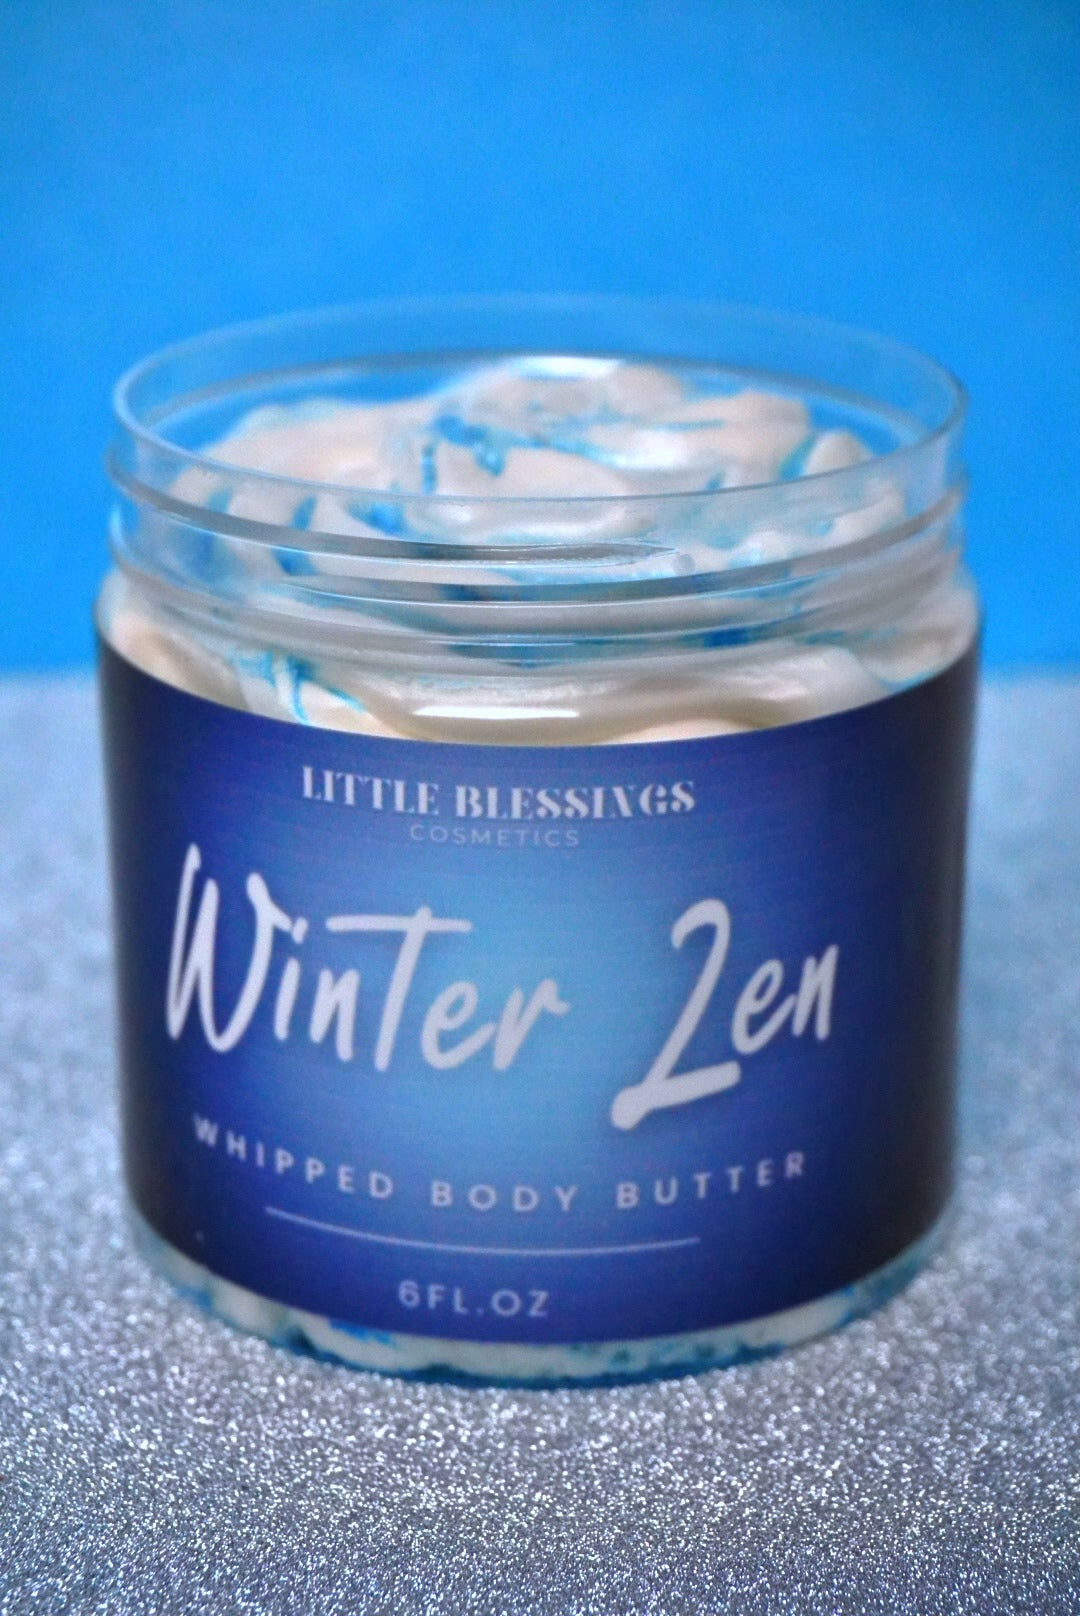 Winter Zen, Body Butter